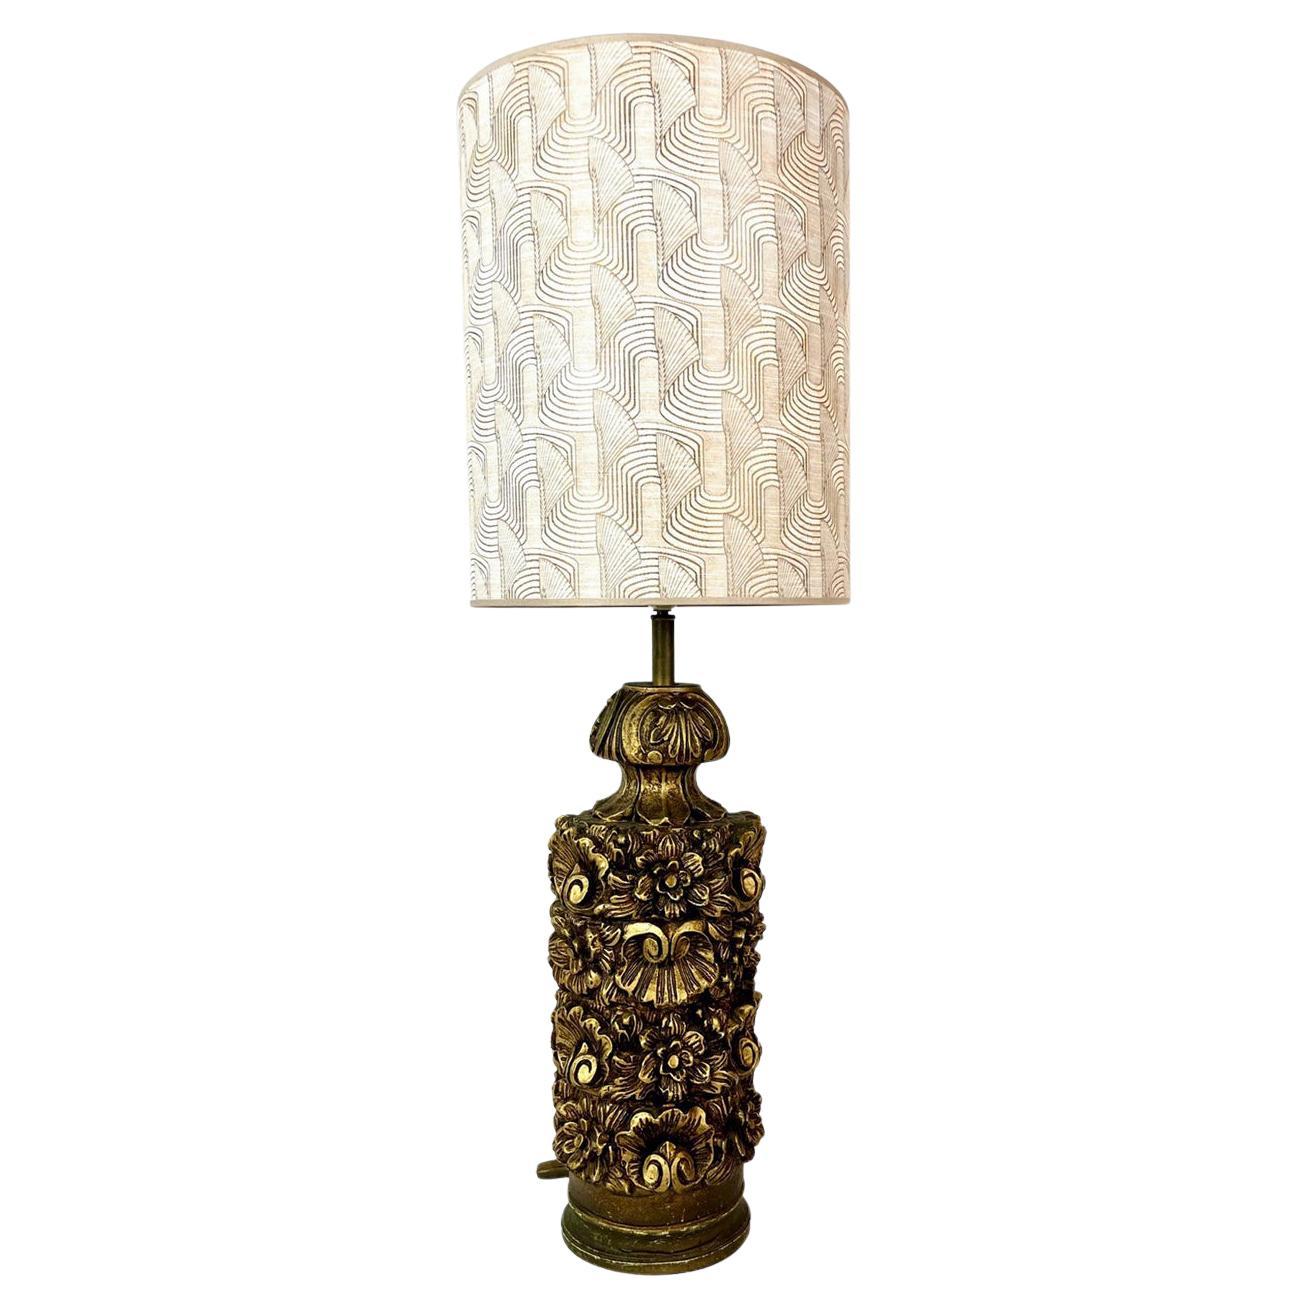 Lampe de table italienne élégante. La lampe de table est fabriquée à la main avec un motif floral et peinte avec de la peinture dorée. 
Abat-jour inclus avec abat-jour intérieur en bronze

La lampe date des années 1950 et est encore en très bon